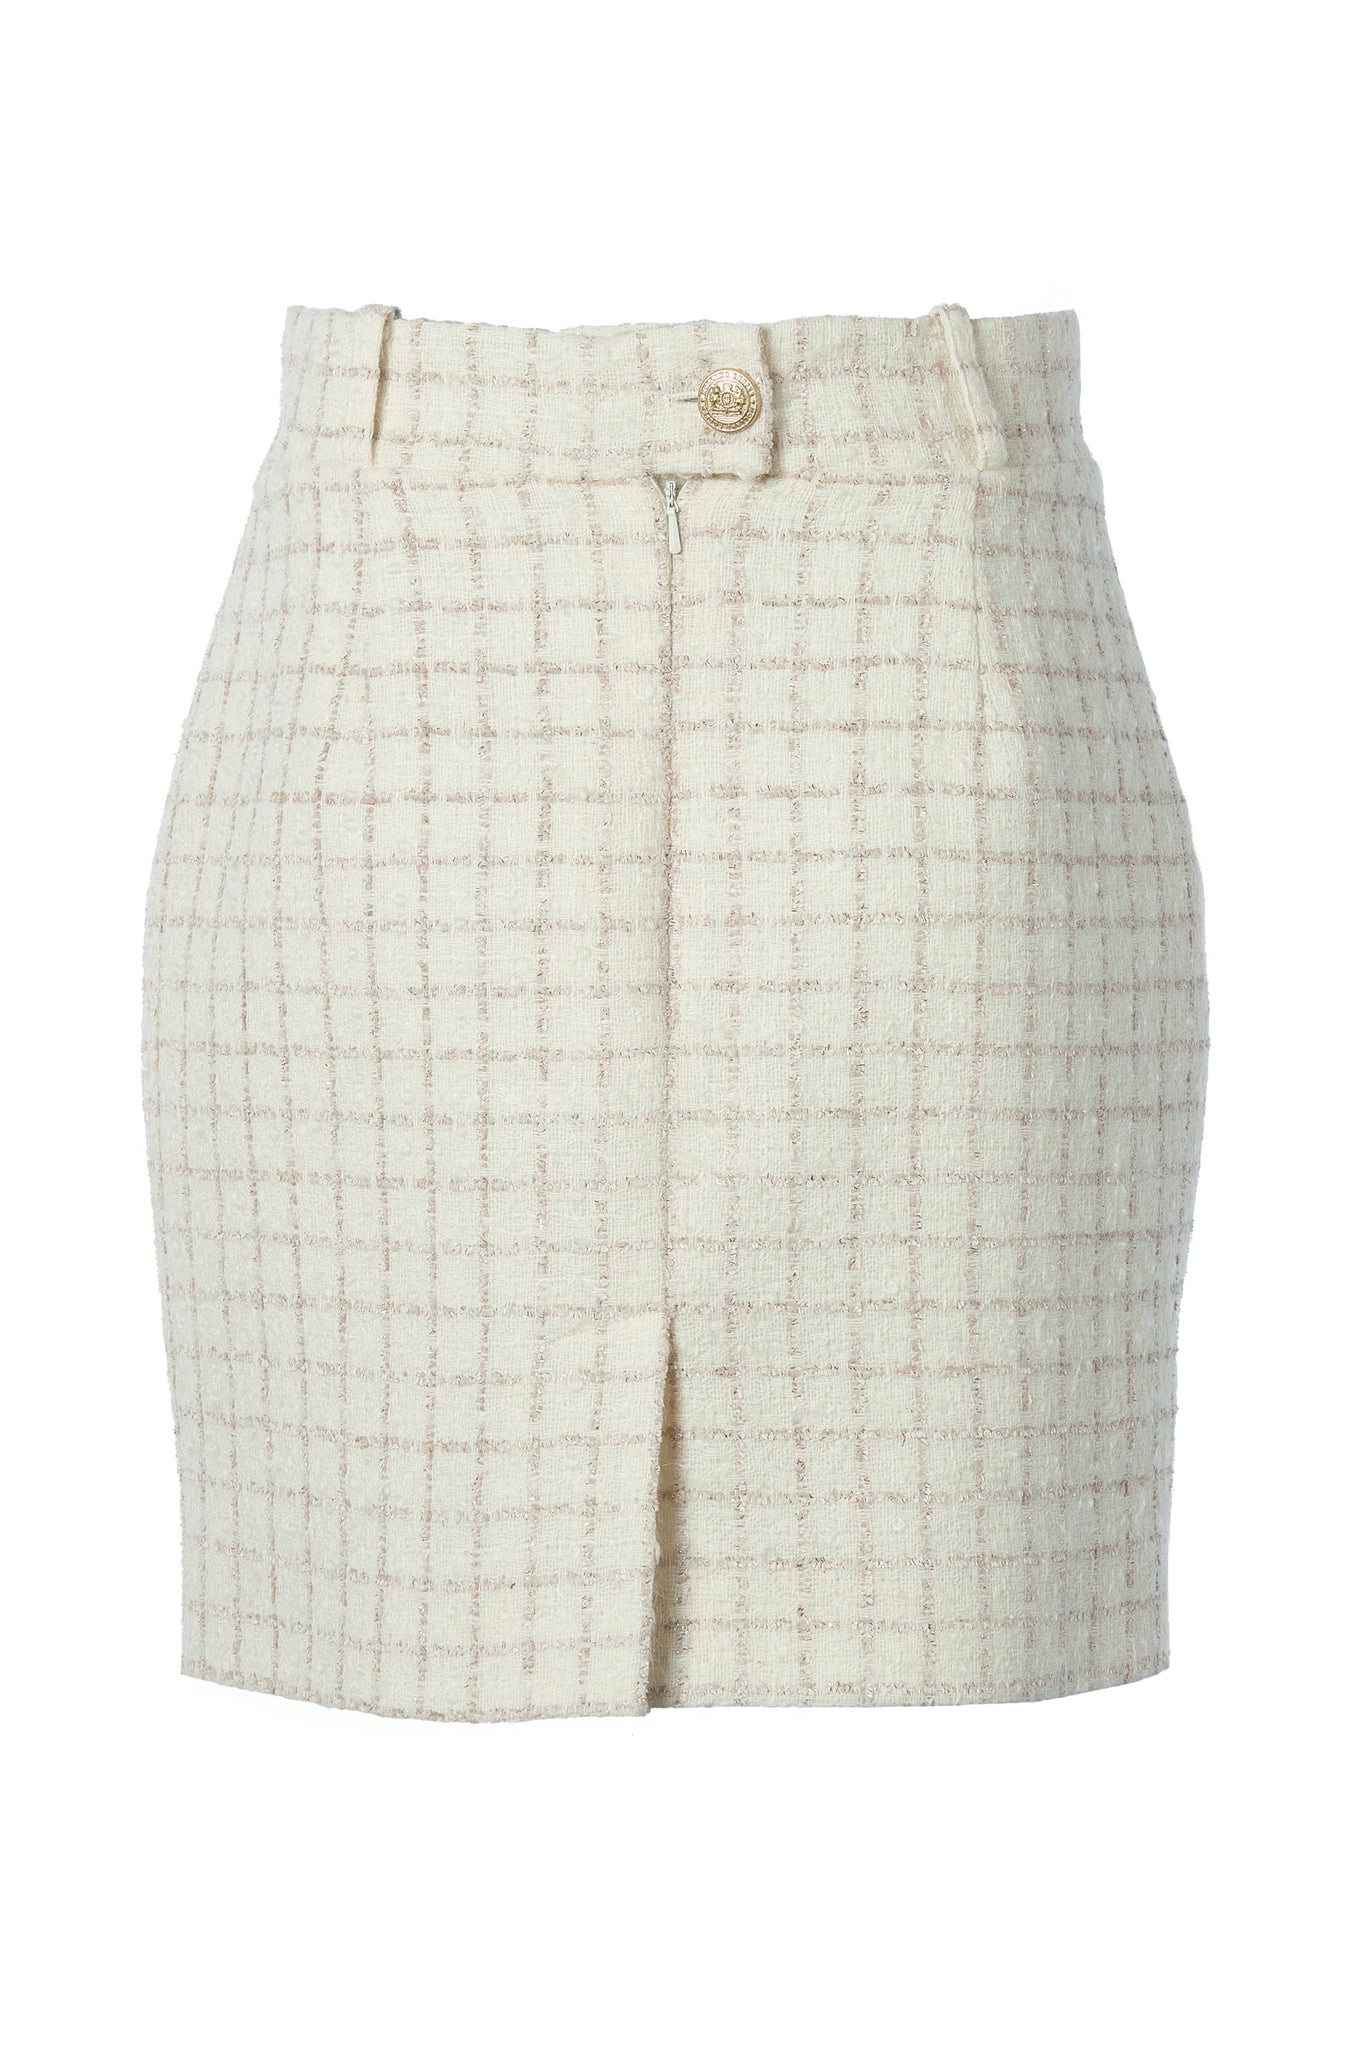 Regency Skirt (Ivory Sparkle Tweed)